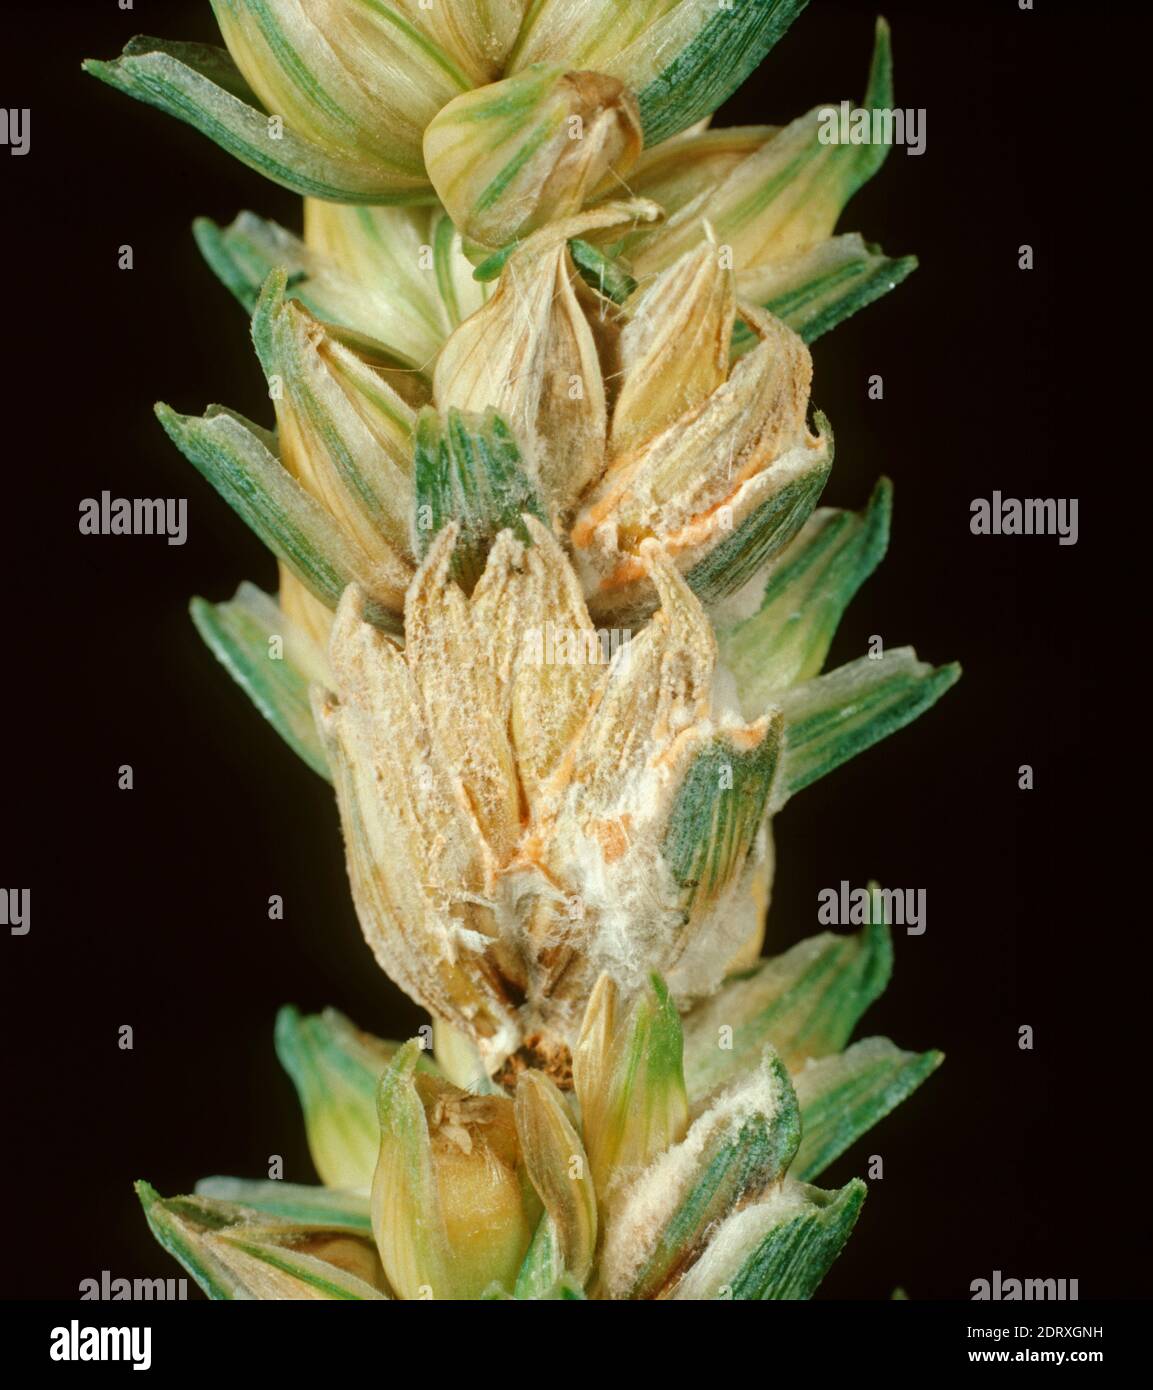 Ohrstößel oder Kopfschorf (Fusarium spp.) Komplex von Krankheitserregern, die die Myzel-Entwicklung auf infizierten Weizenkörnern und Ohren verursachen Stockfoto